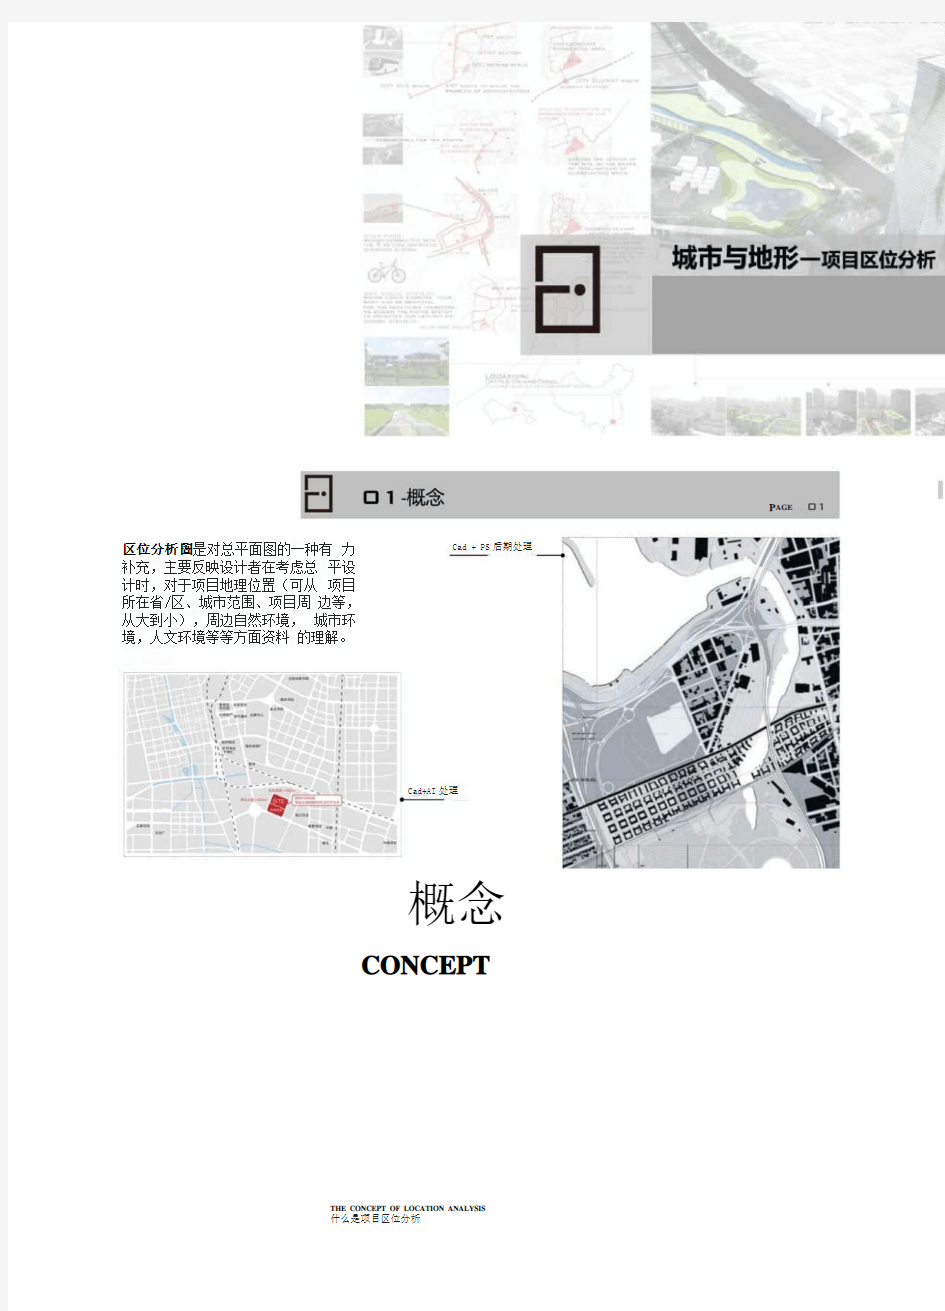 城市与地形-项目区位分析- diagram技法 建筑分析图教程